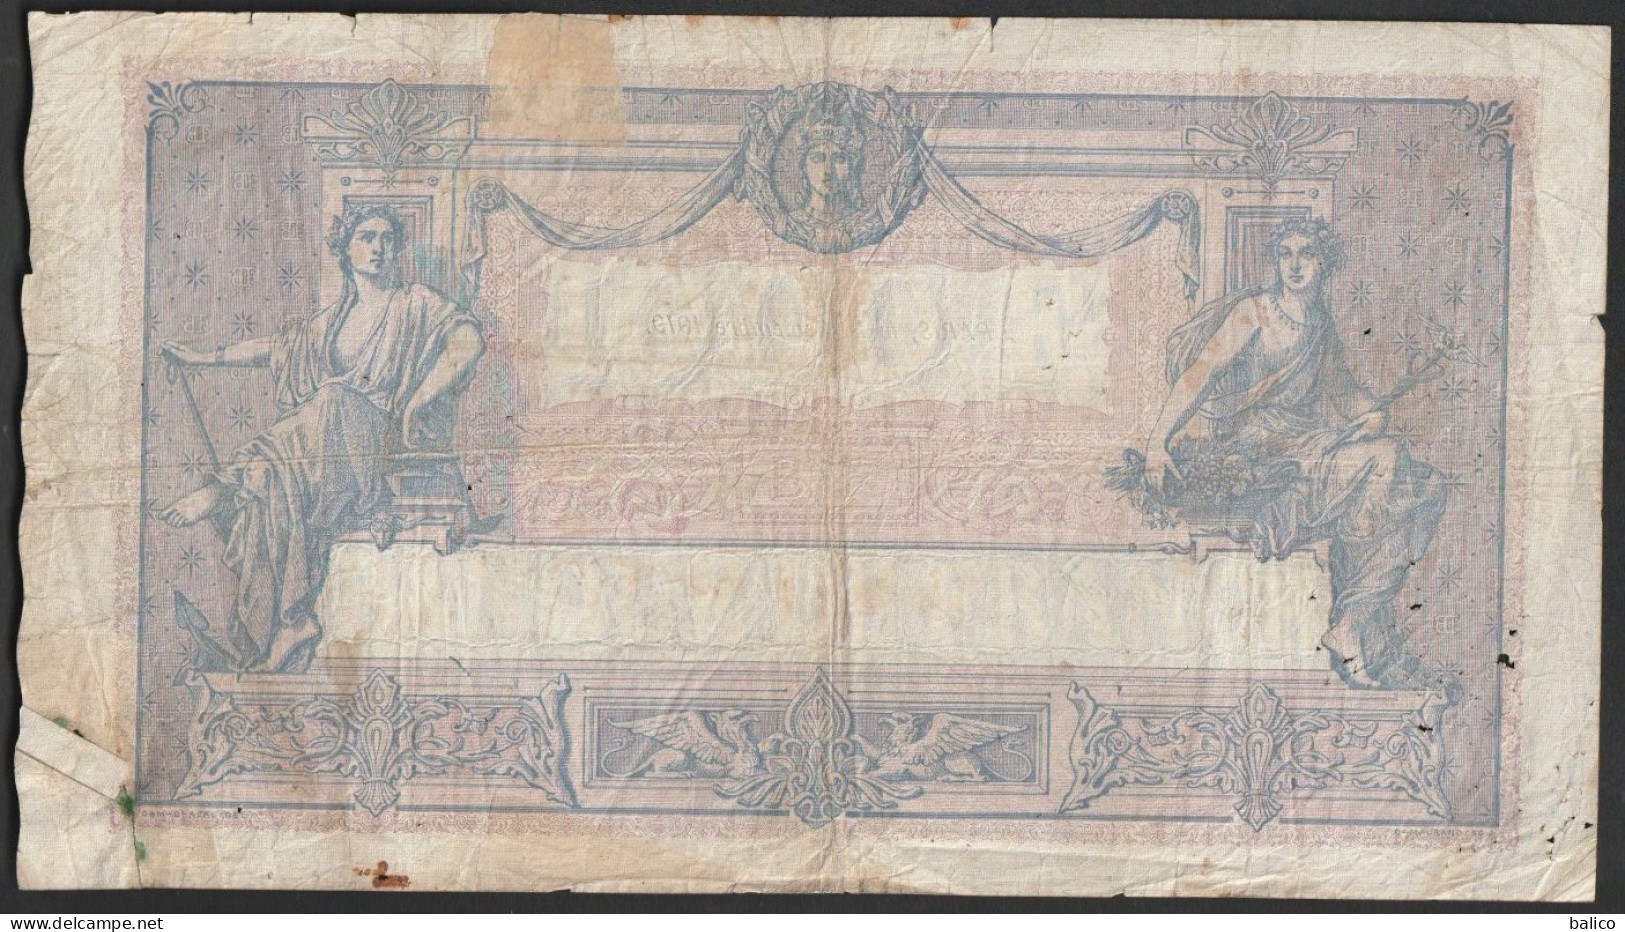 France, 1000 Francs, ''Bleu Et Rose'', 12 Septembre 1919 - Y.1299 - 335 - 1 000 F 1889-1926 ''Bleu Et Rose''